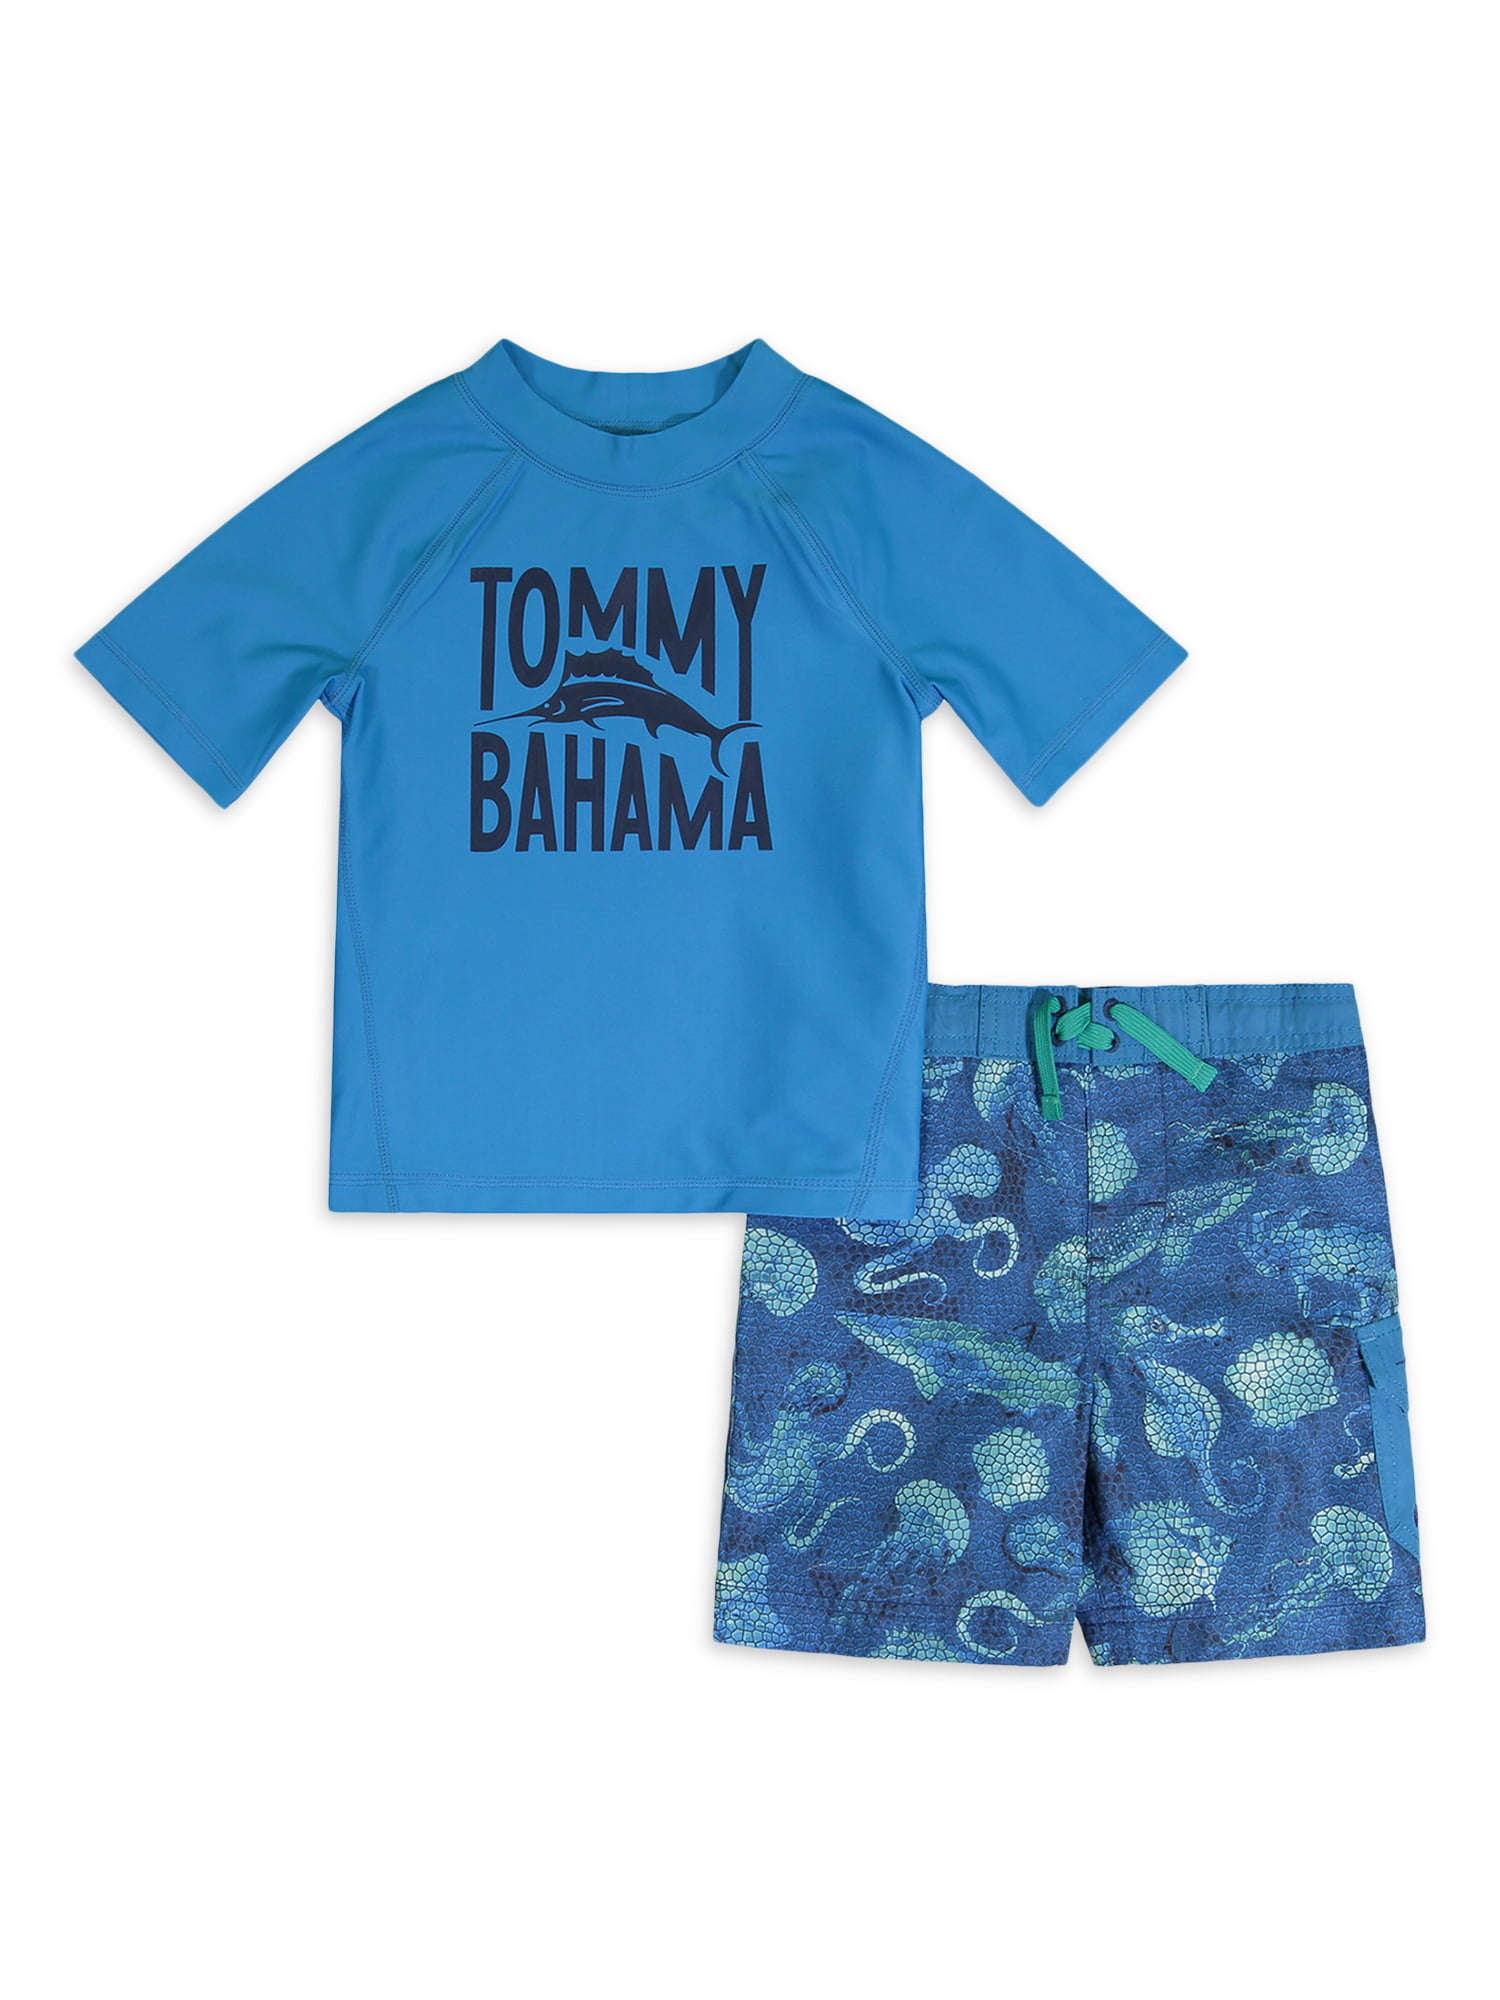 Tommy Bahama Boys' Rashguard and Trunks Swimsuit Set